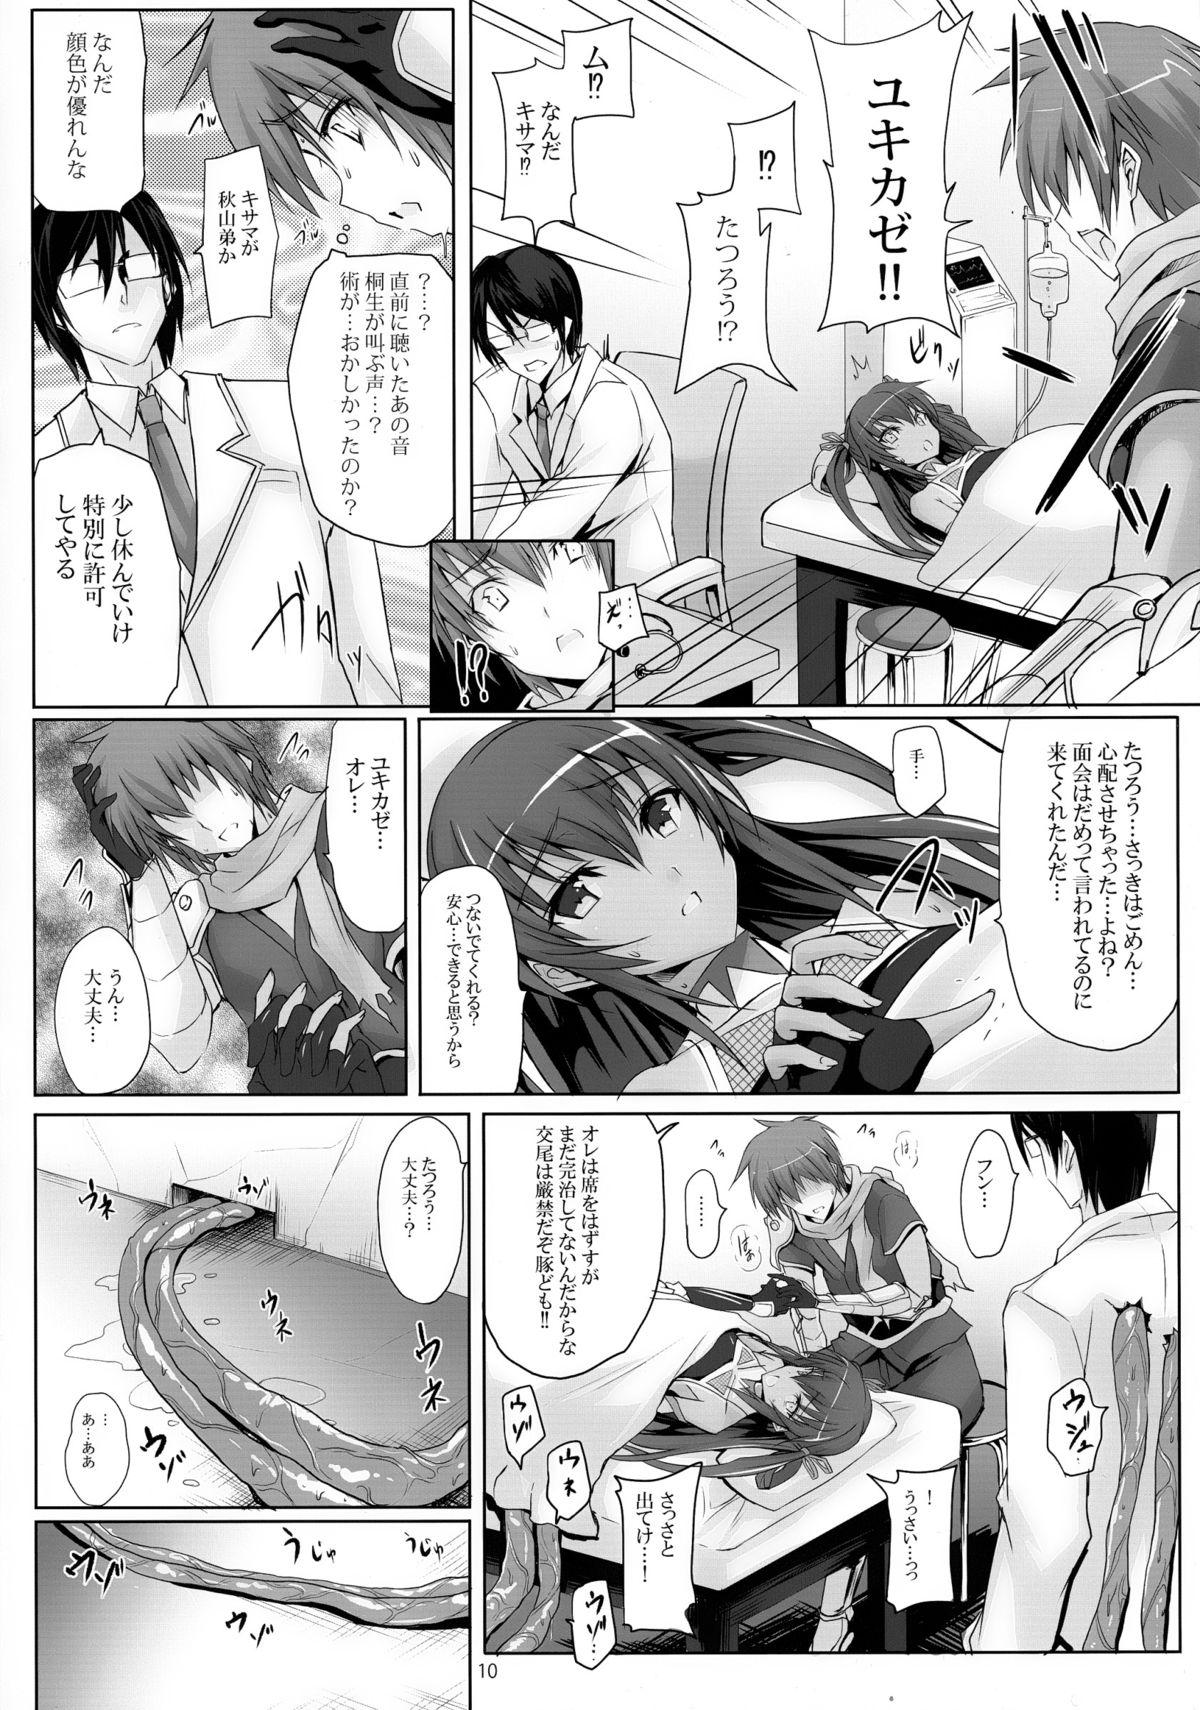 Sentones Boku no Kanojo wa Taimanin - Taimanin yukikaze Bang Bros - Page 10